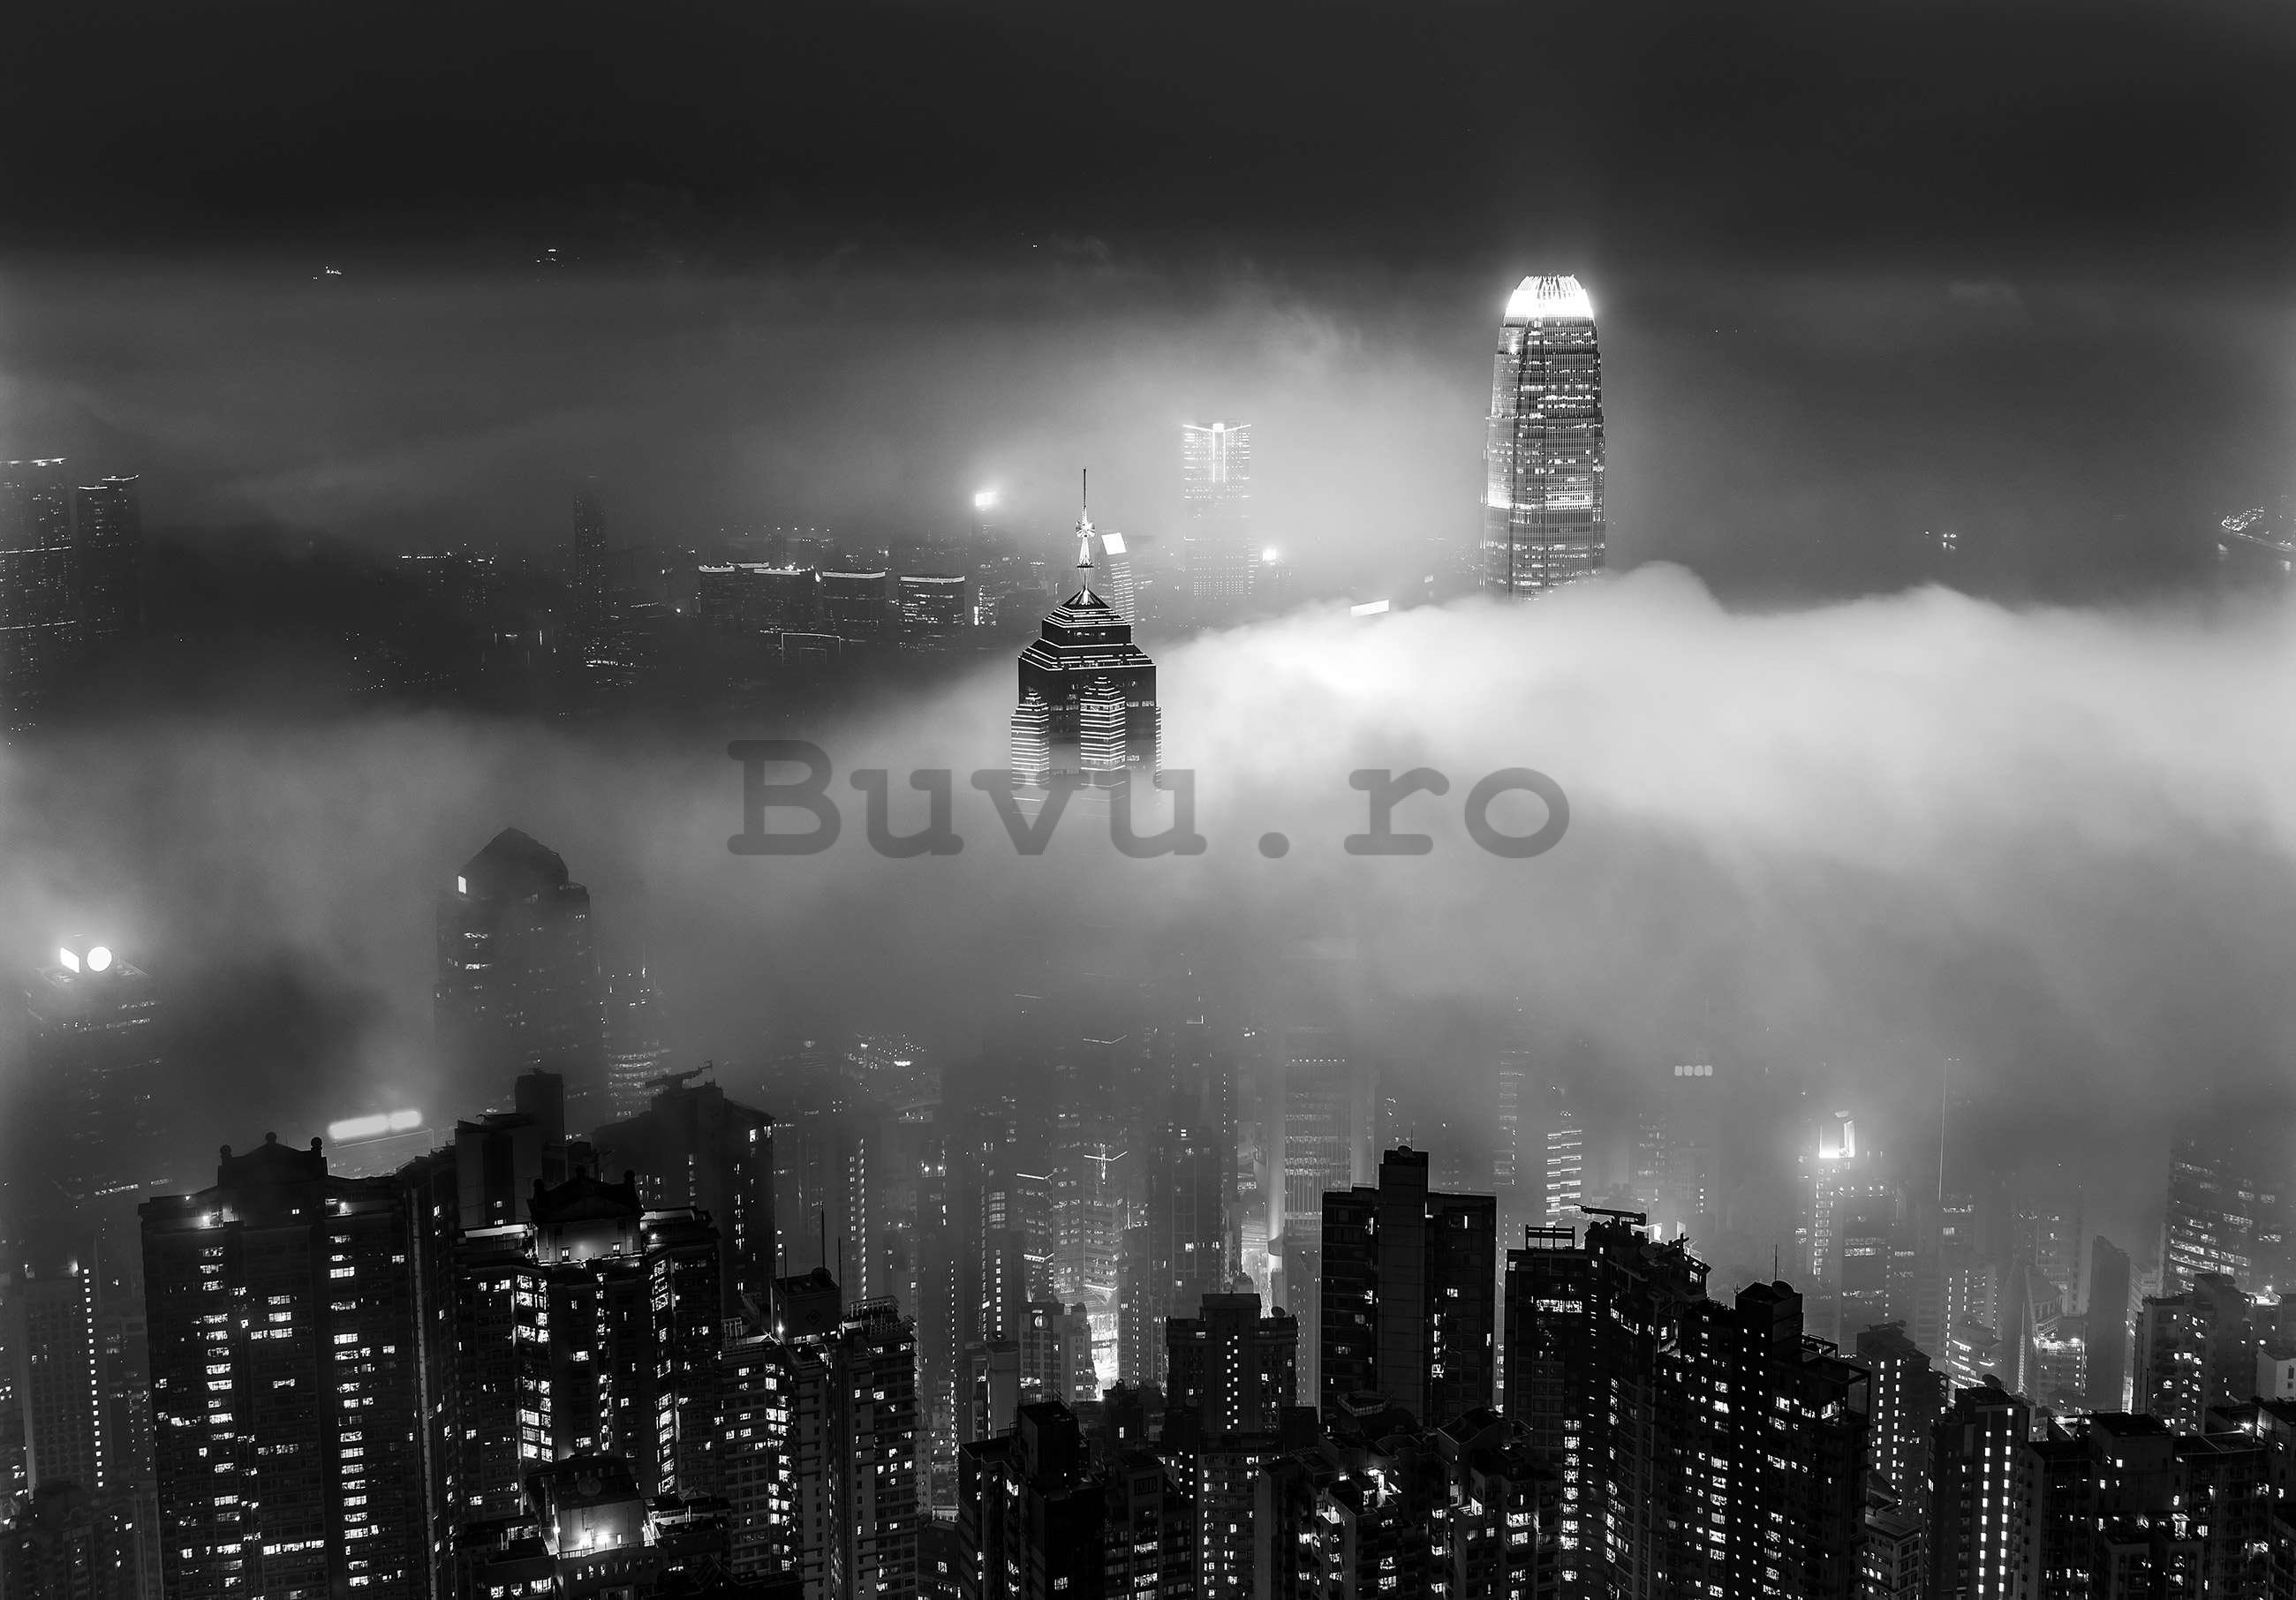 Fototapet vlies: Orașul de noapte în ceață (alb și negru) - 152,5x104 cm